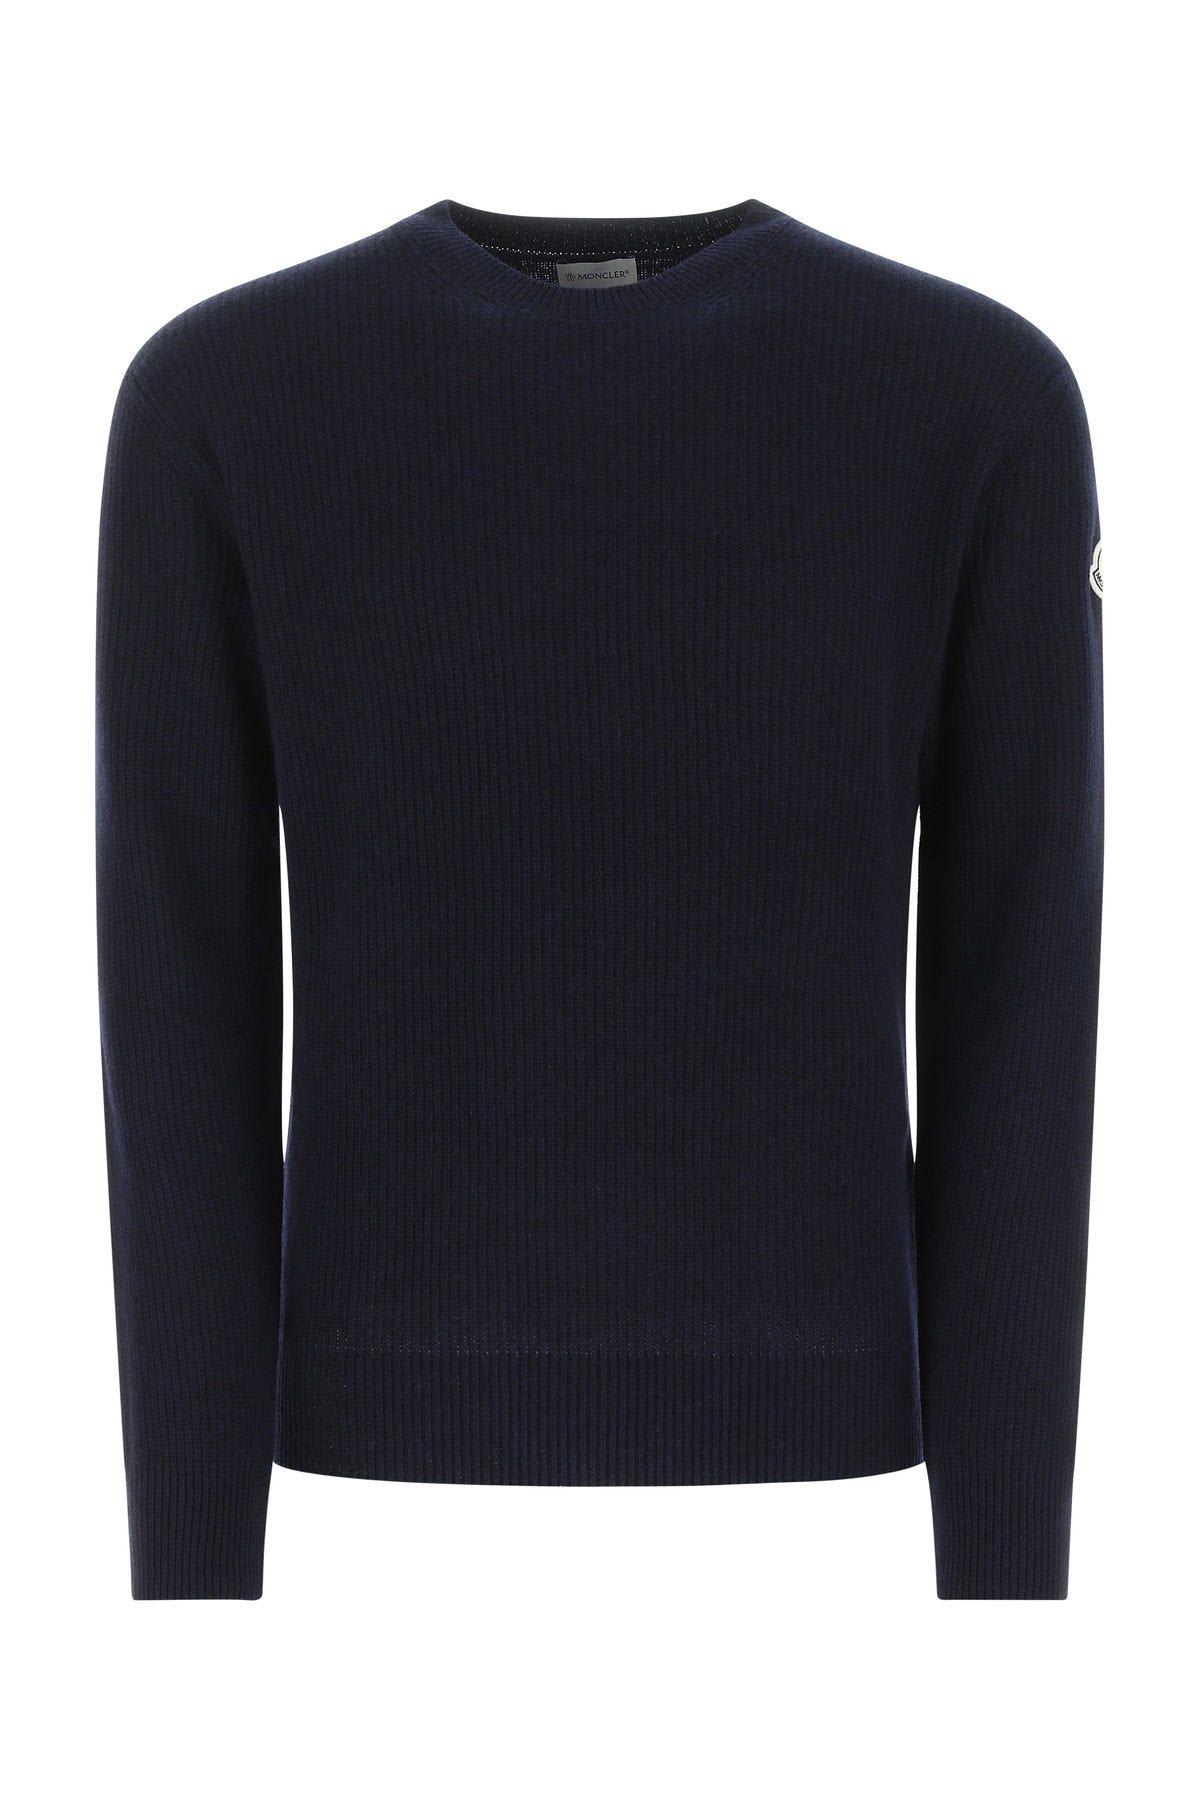 Moncler Blue Wool Blend Sweater